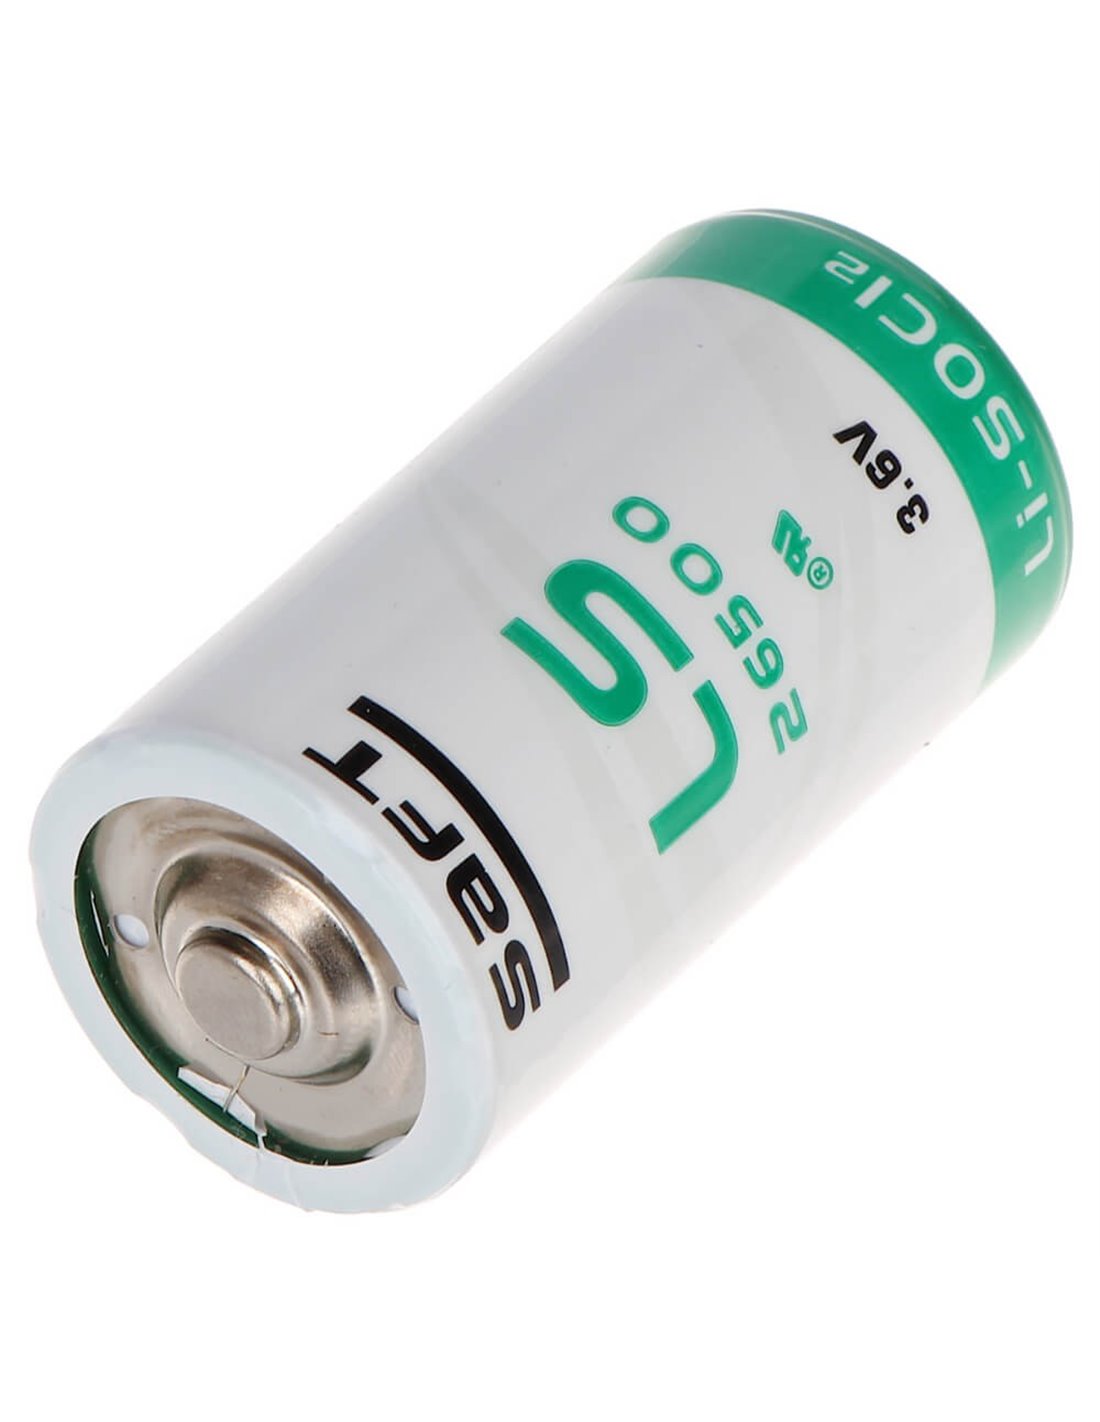 Ultralife UHE-ER34615 Battery - 3.6V D Cell Lithium